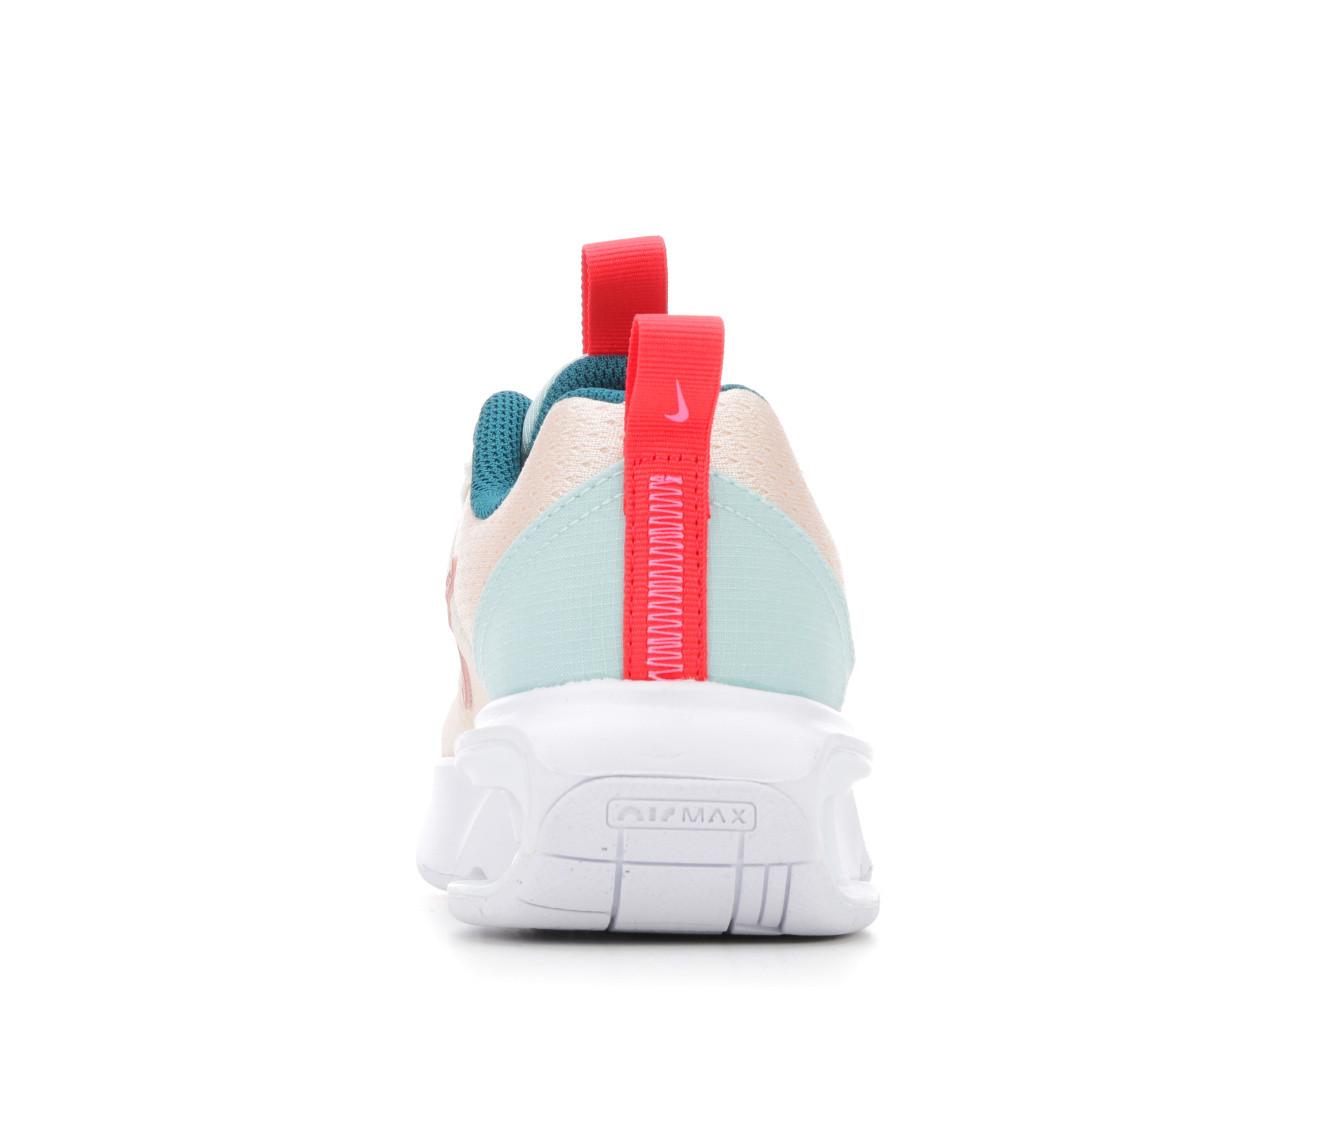 Girls' Nike Little Kid Air Max Intrlk Sneakers